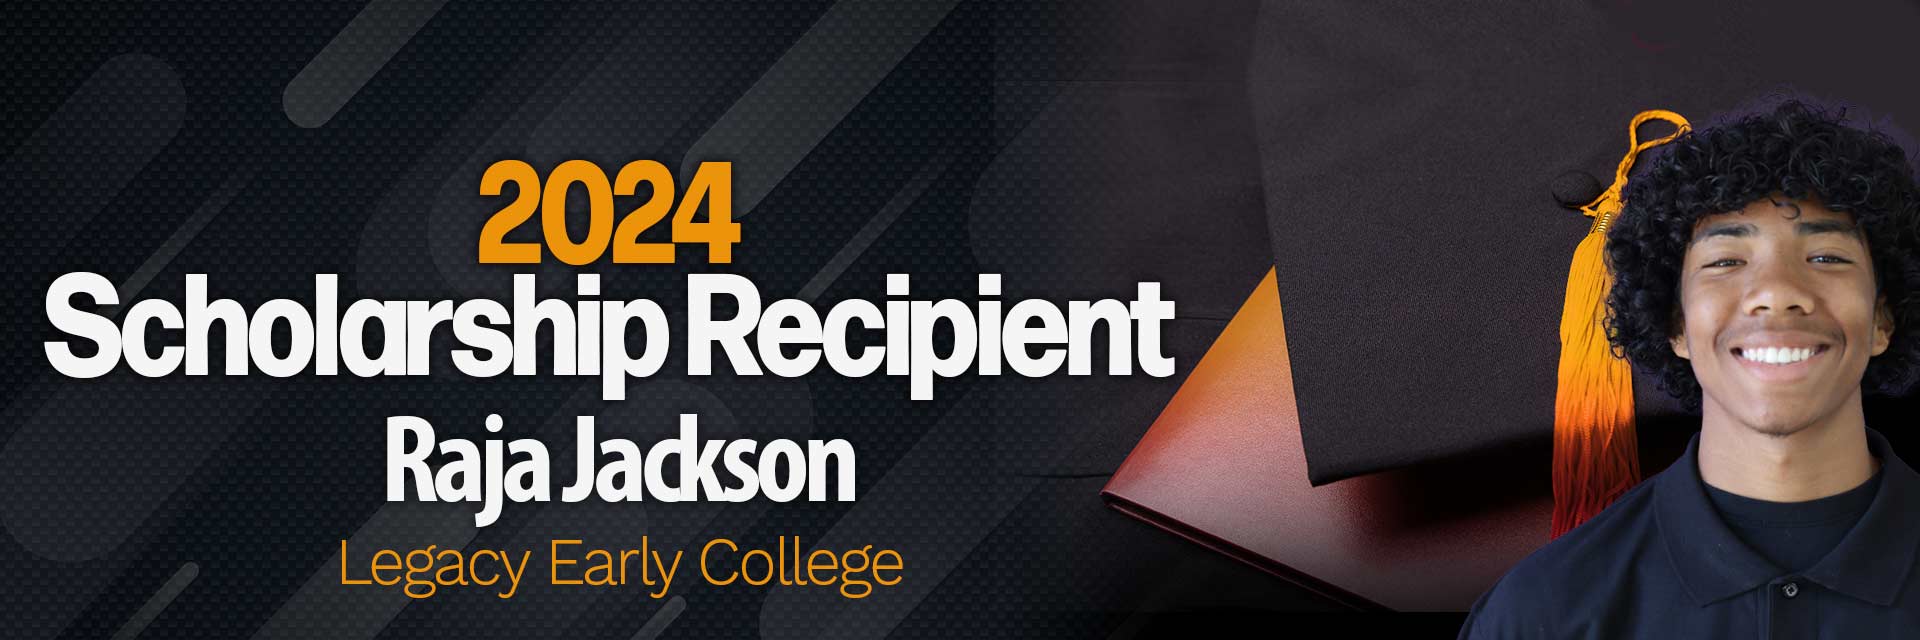 Raja Jackson - 2024 Scholarship Recipient